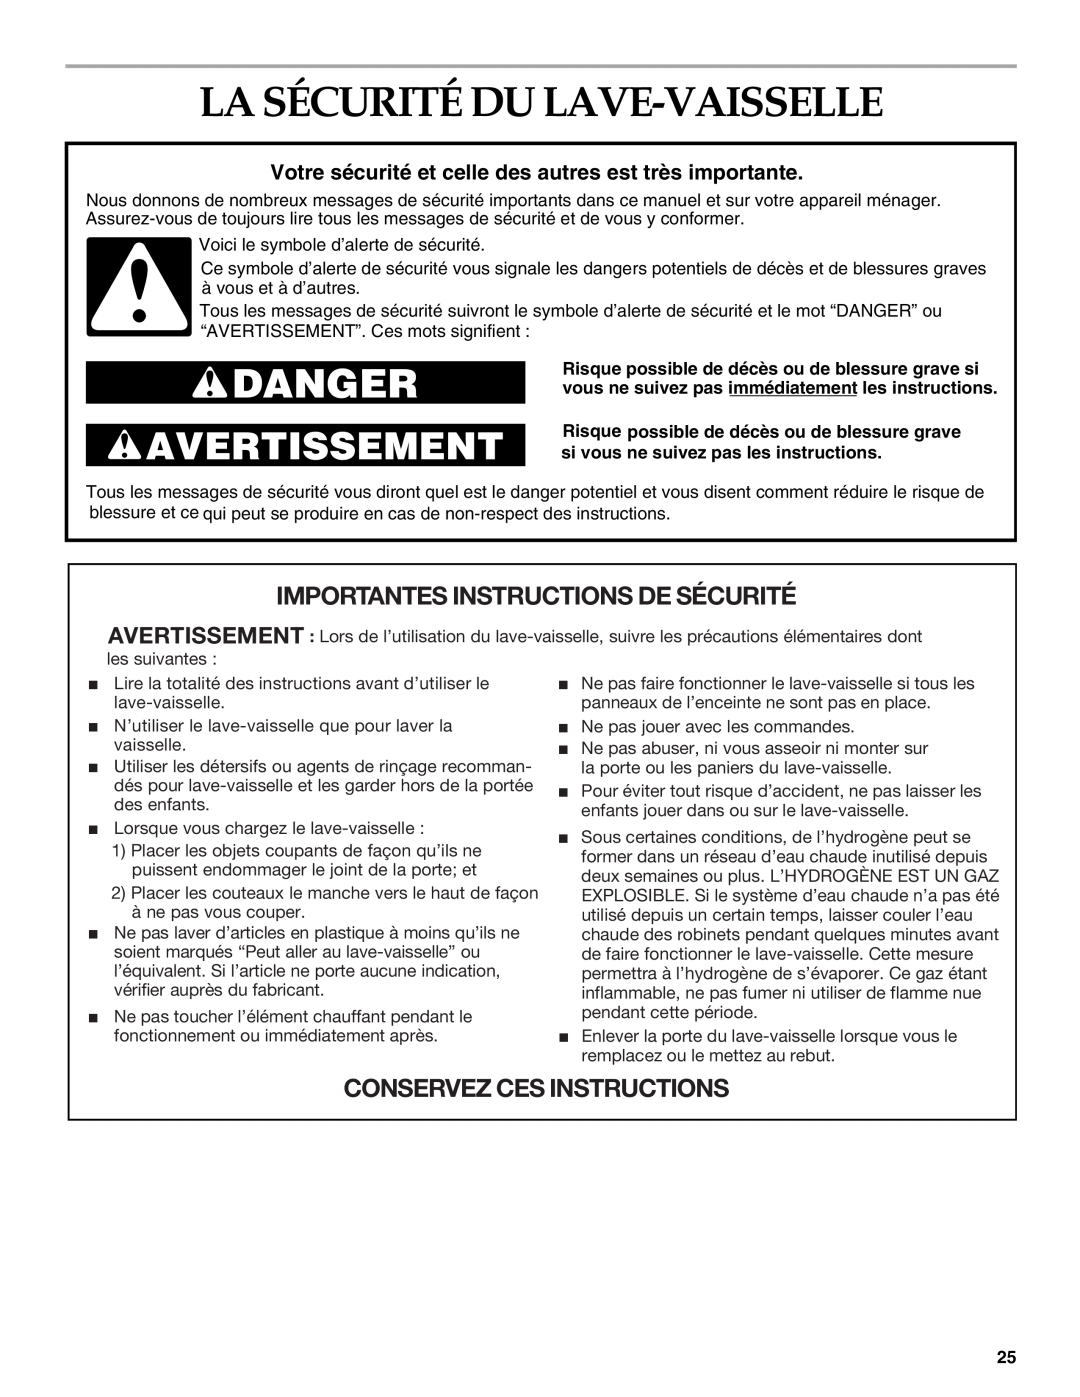 KitchenAid KUDS01DL manual La Sécurité Du Lave-Vaisselle, Votre sécurité et celle des autres est très importante, Danger 